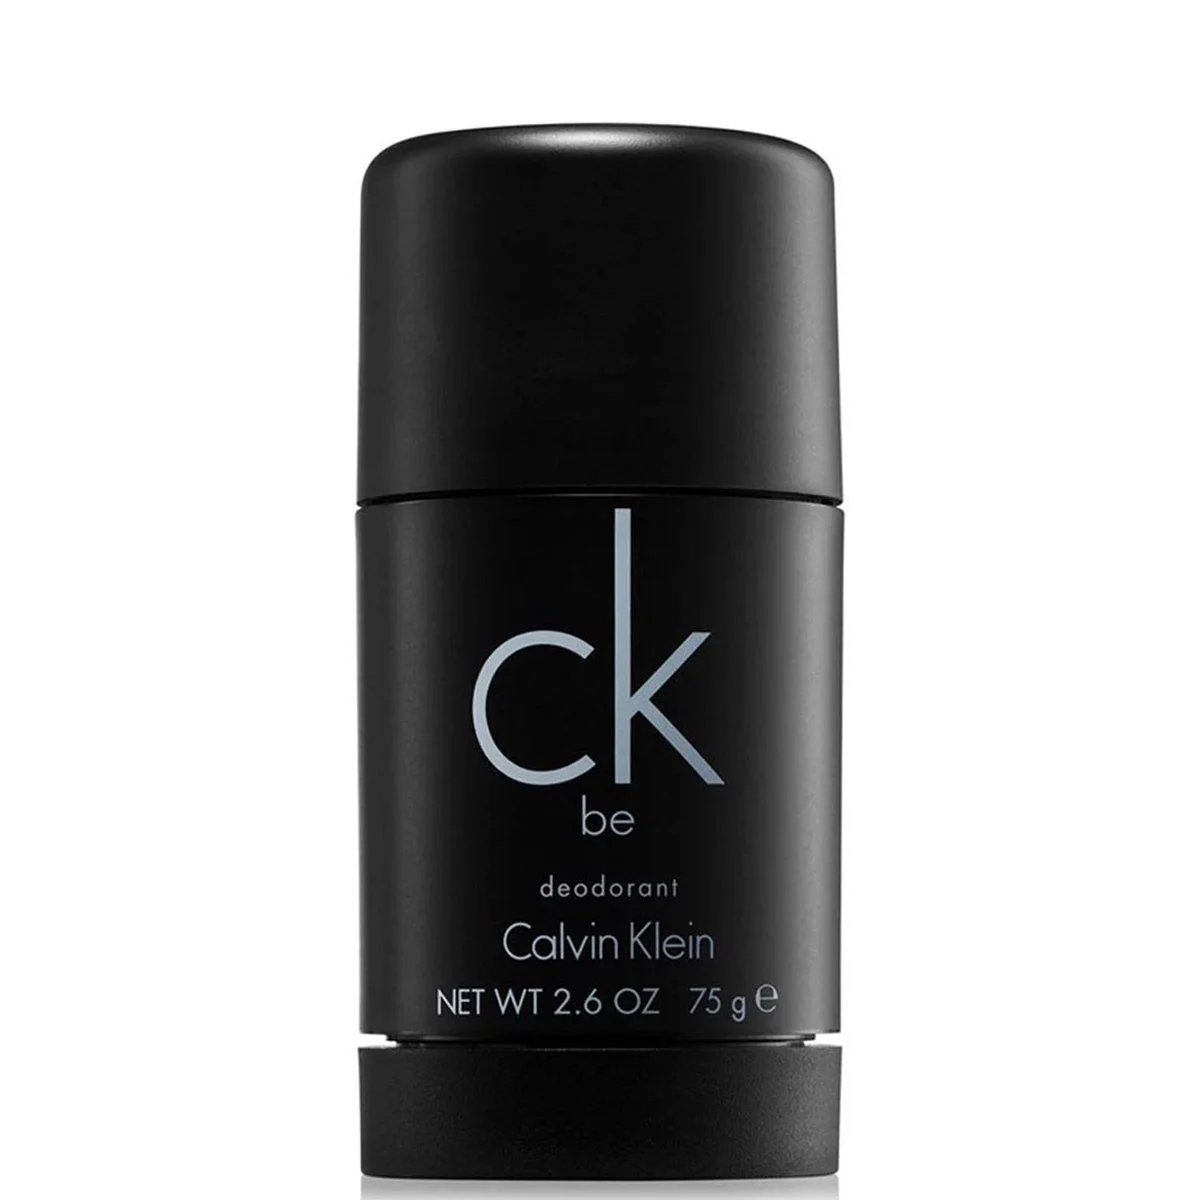 Hình 1 - Lăn Khử Mùi Nước Hoa Unisex Calvin Klein CK Be 75g